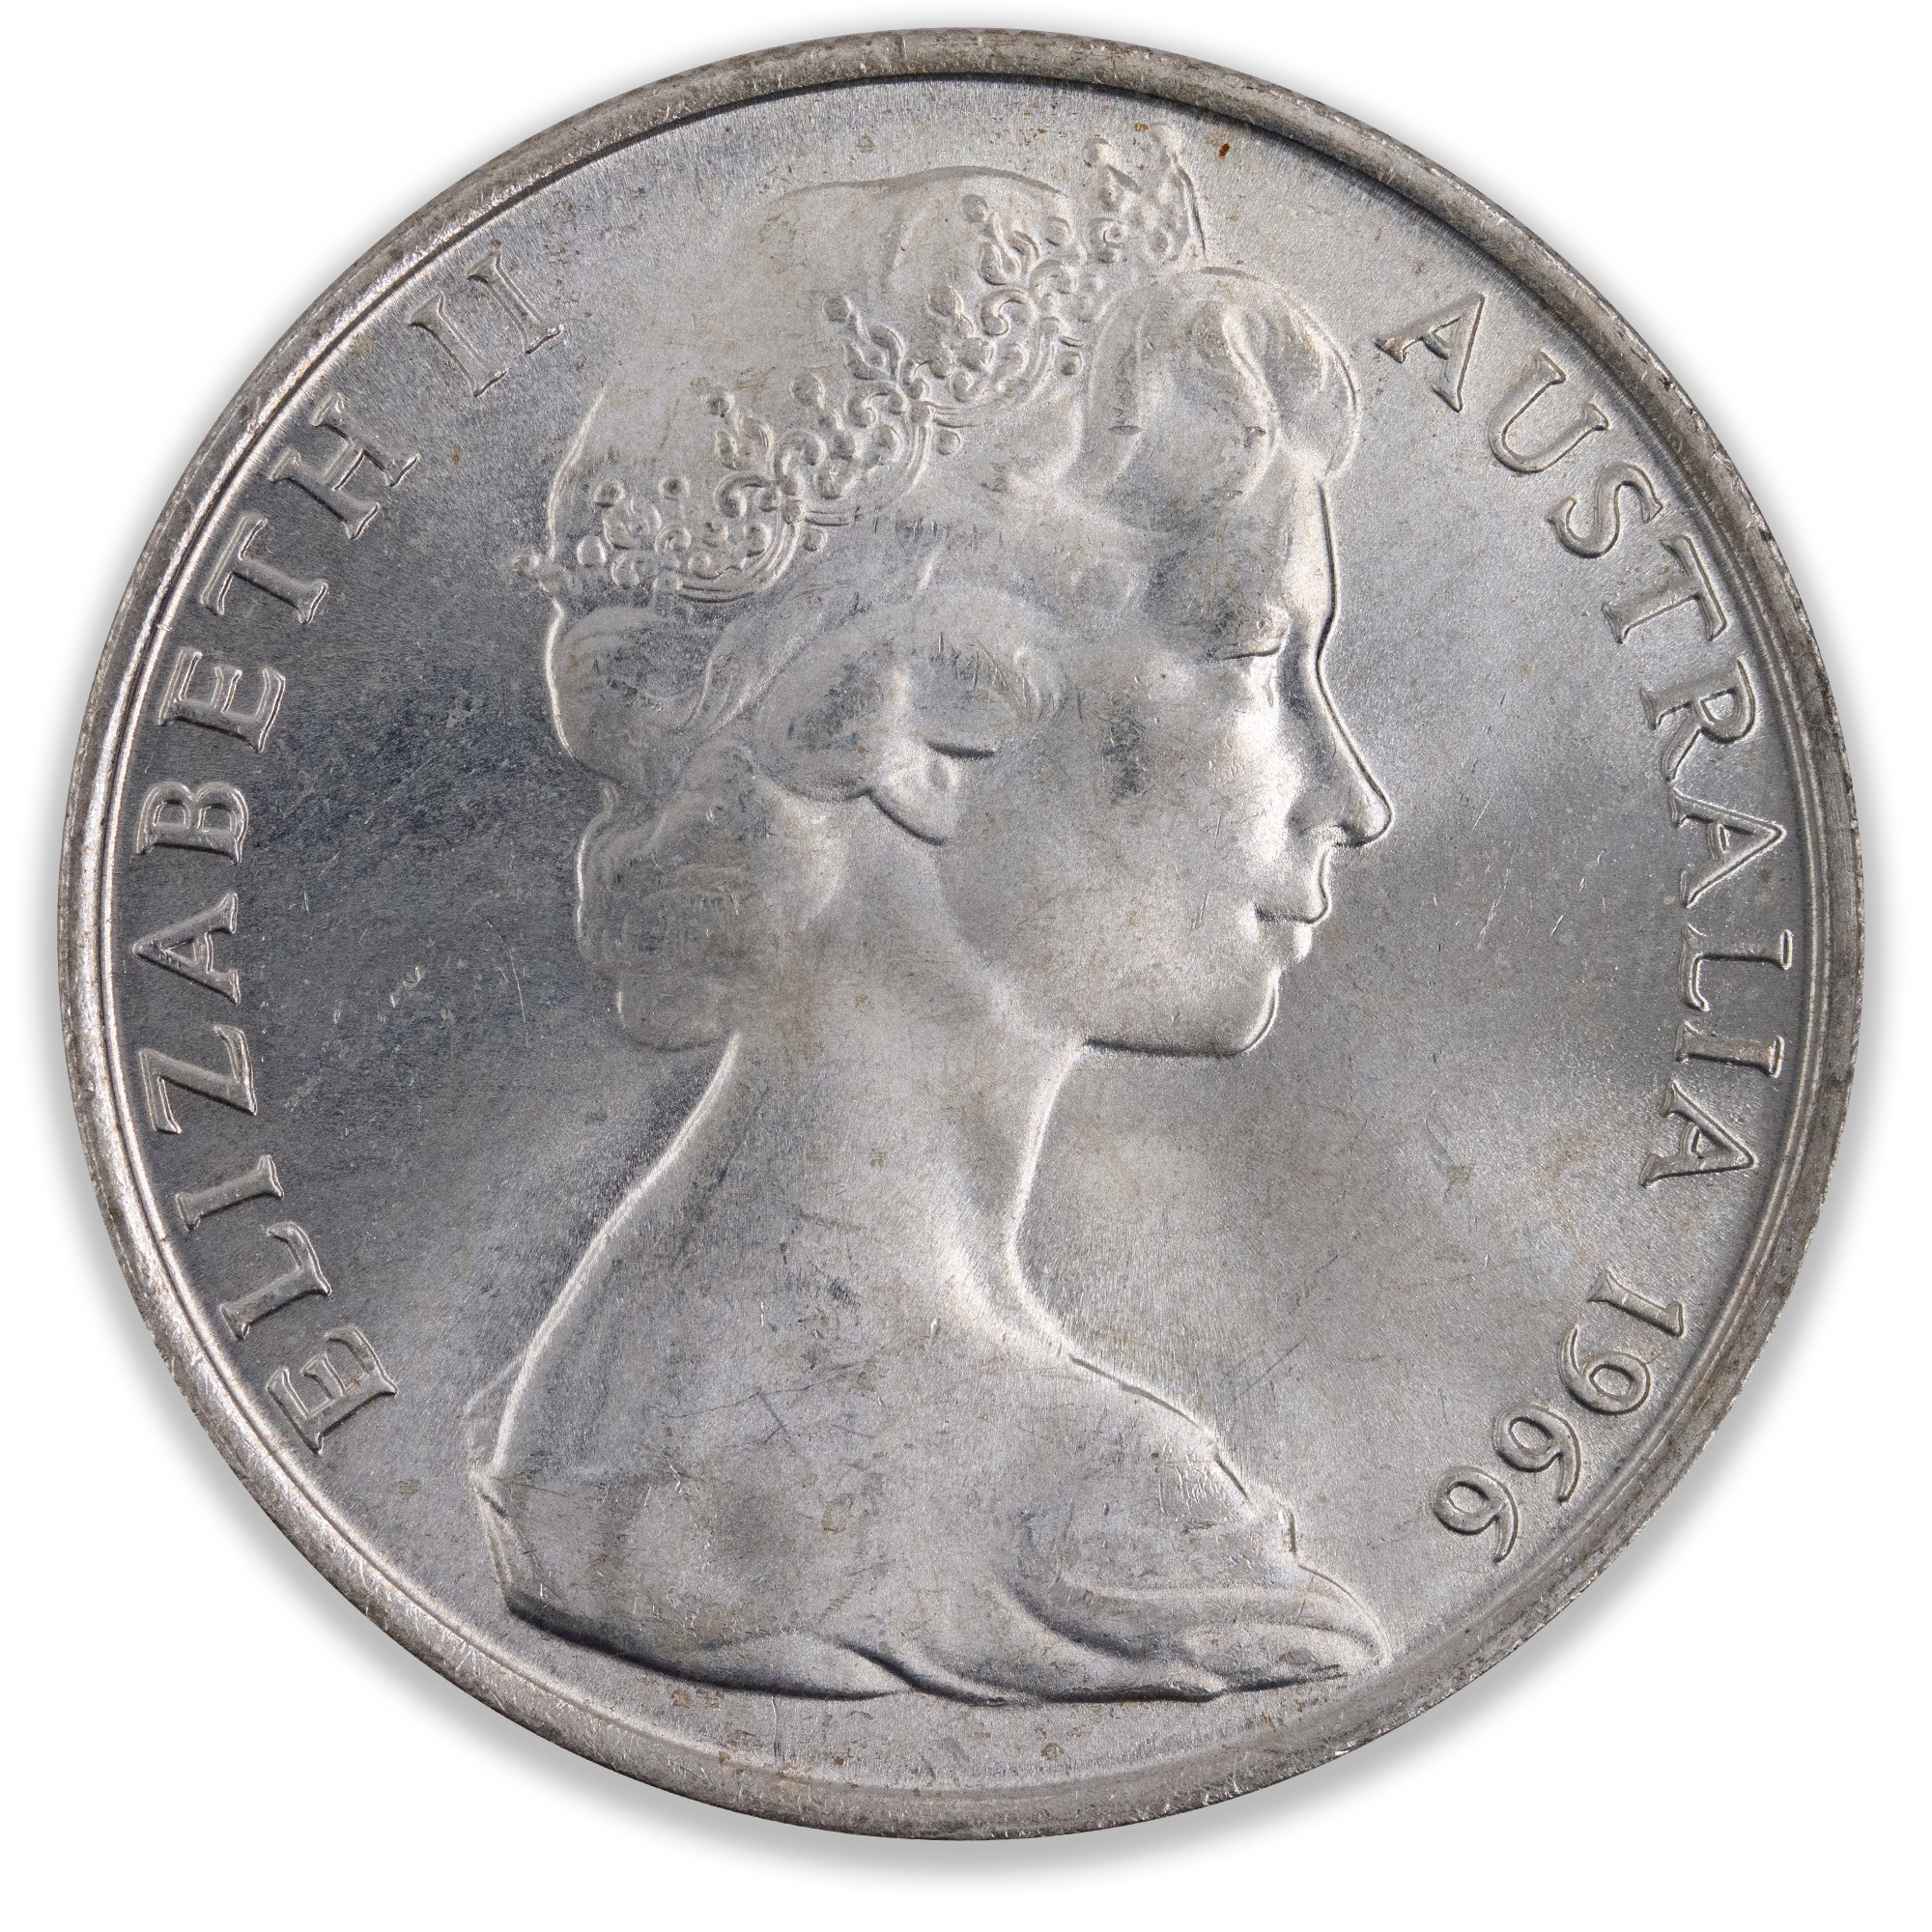 1966 Round 50 Cent Coin